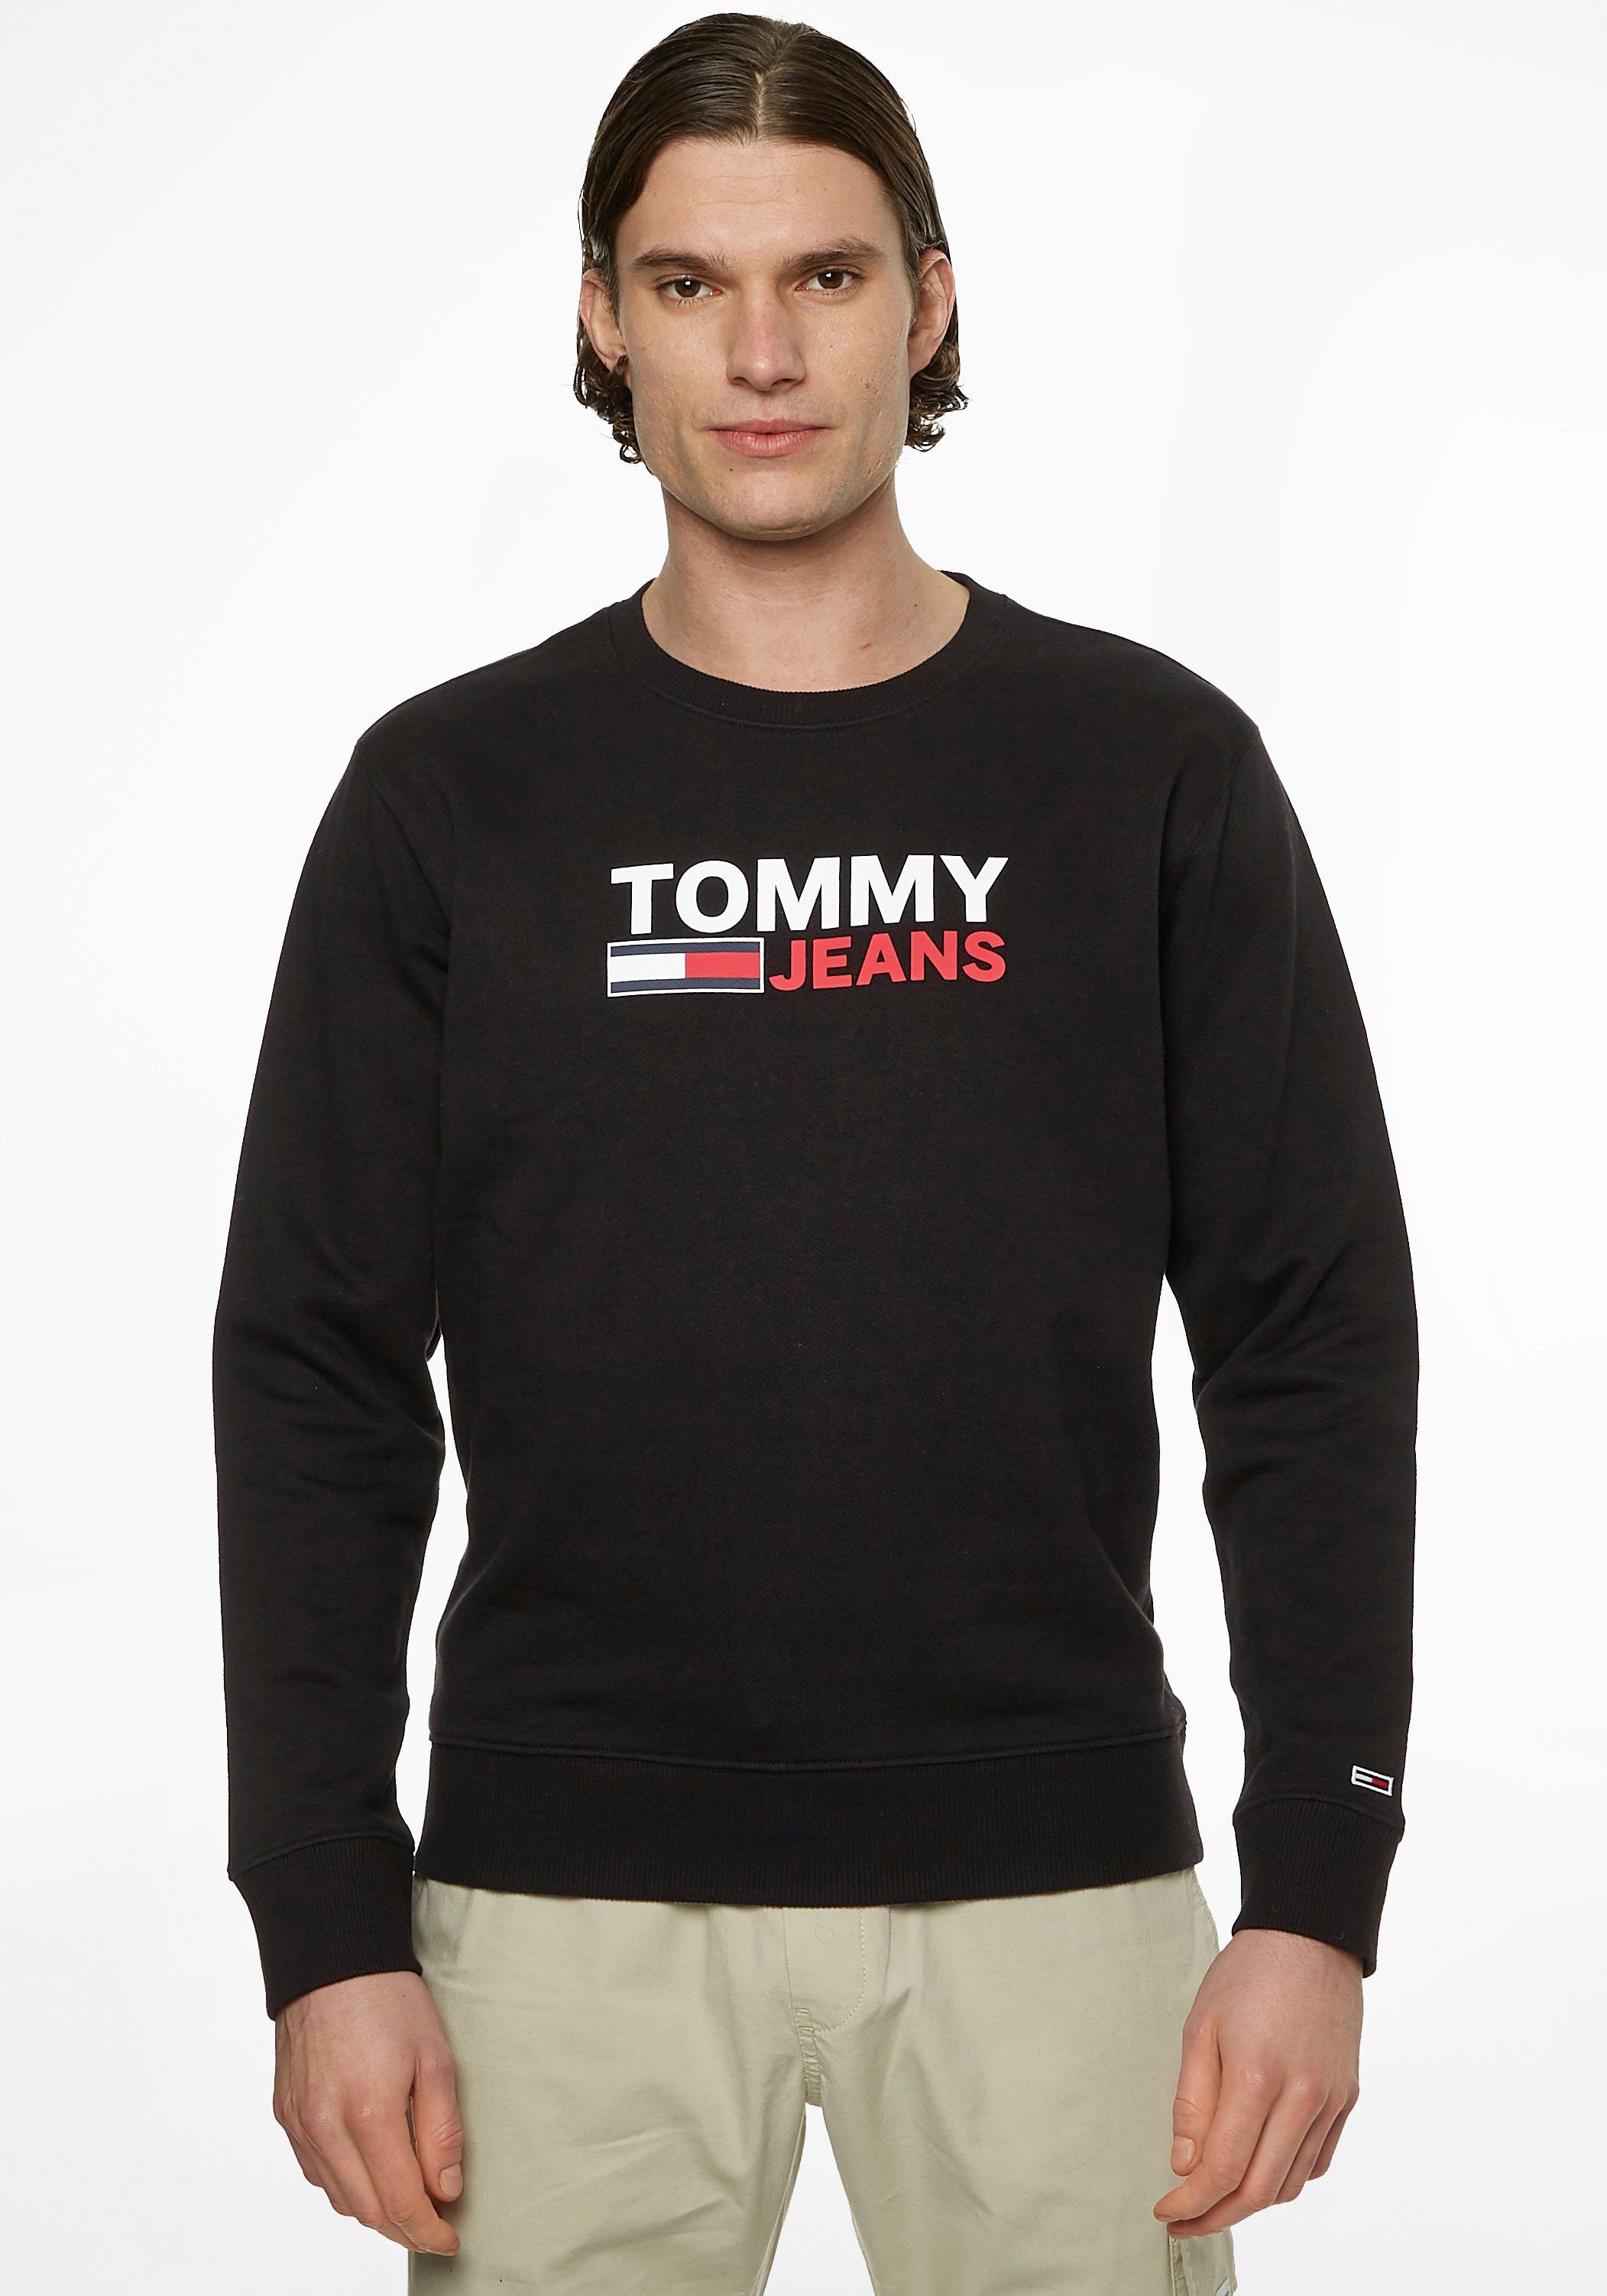 Tommy Hilfiger Herren Online-Shop | OTTO